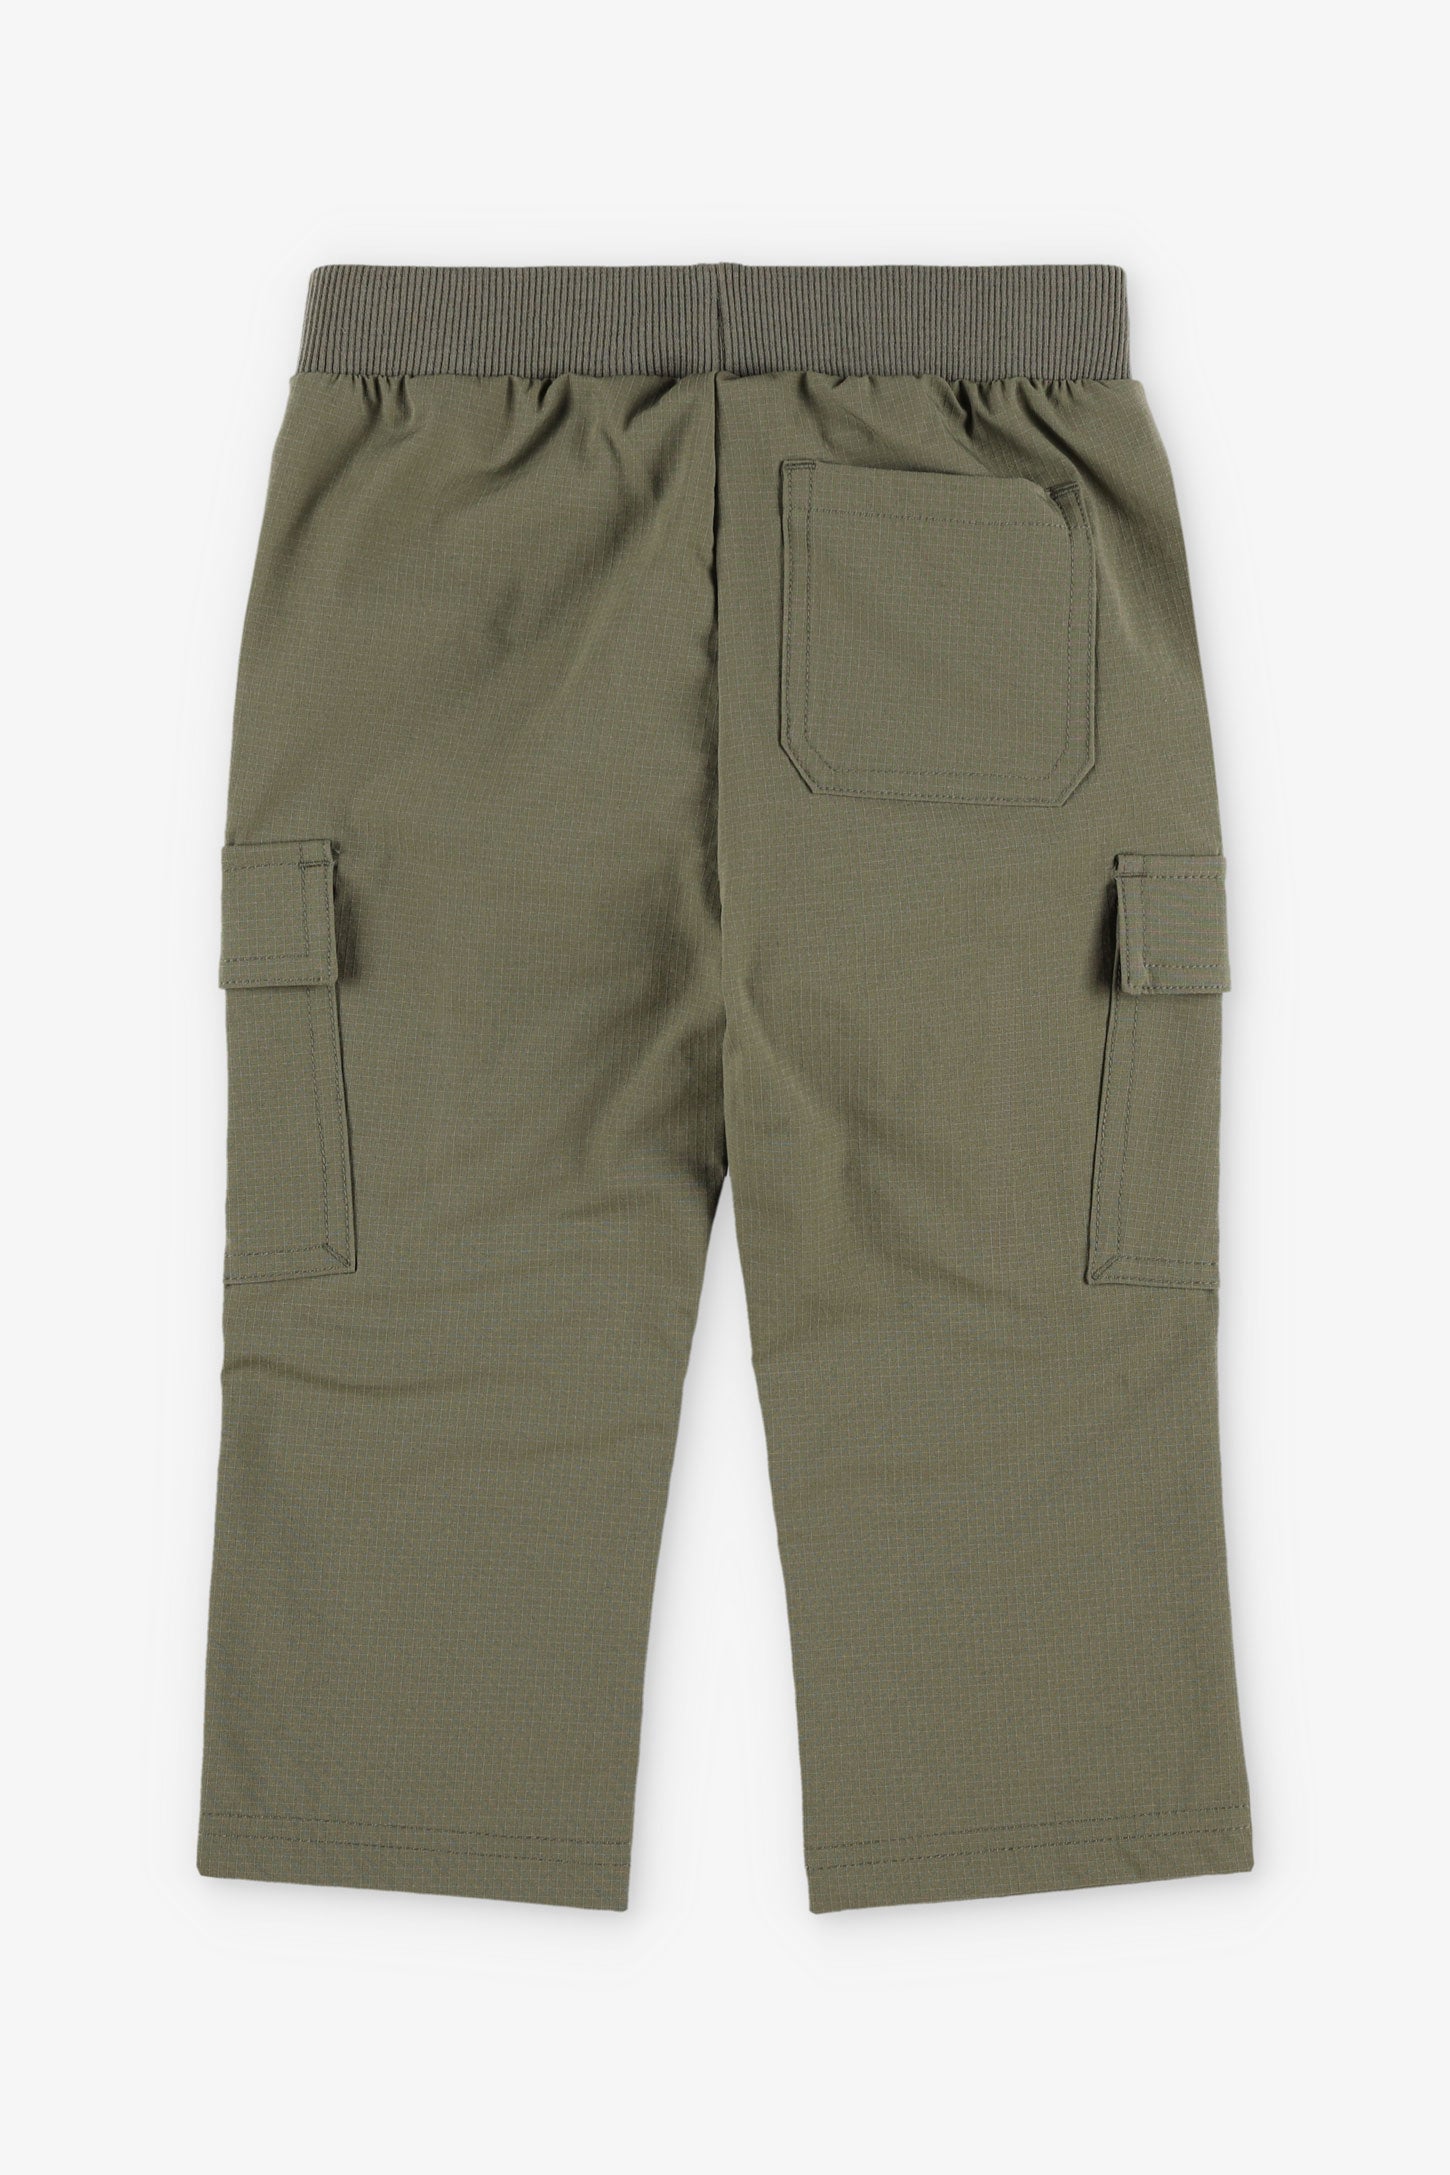 Pantalon cargo en Ripstop BM, 2T-3T - Bébé garçon && KAKI